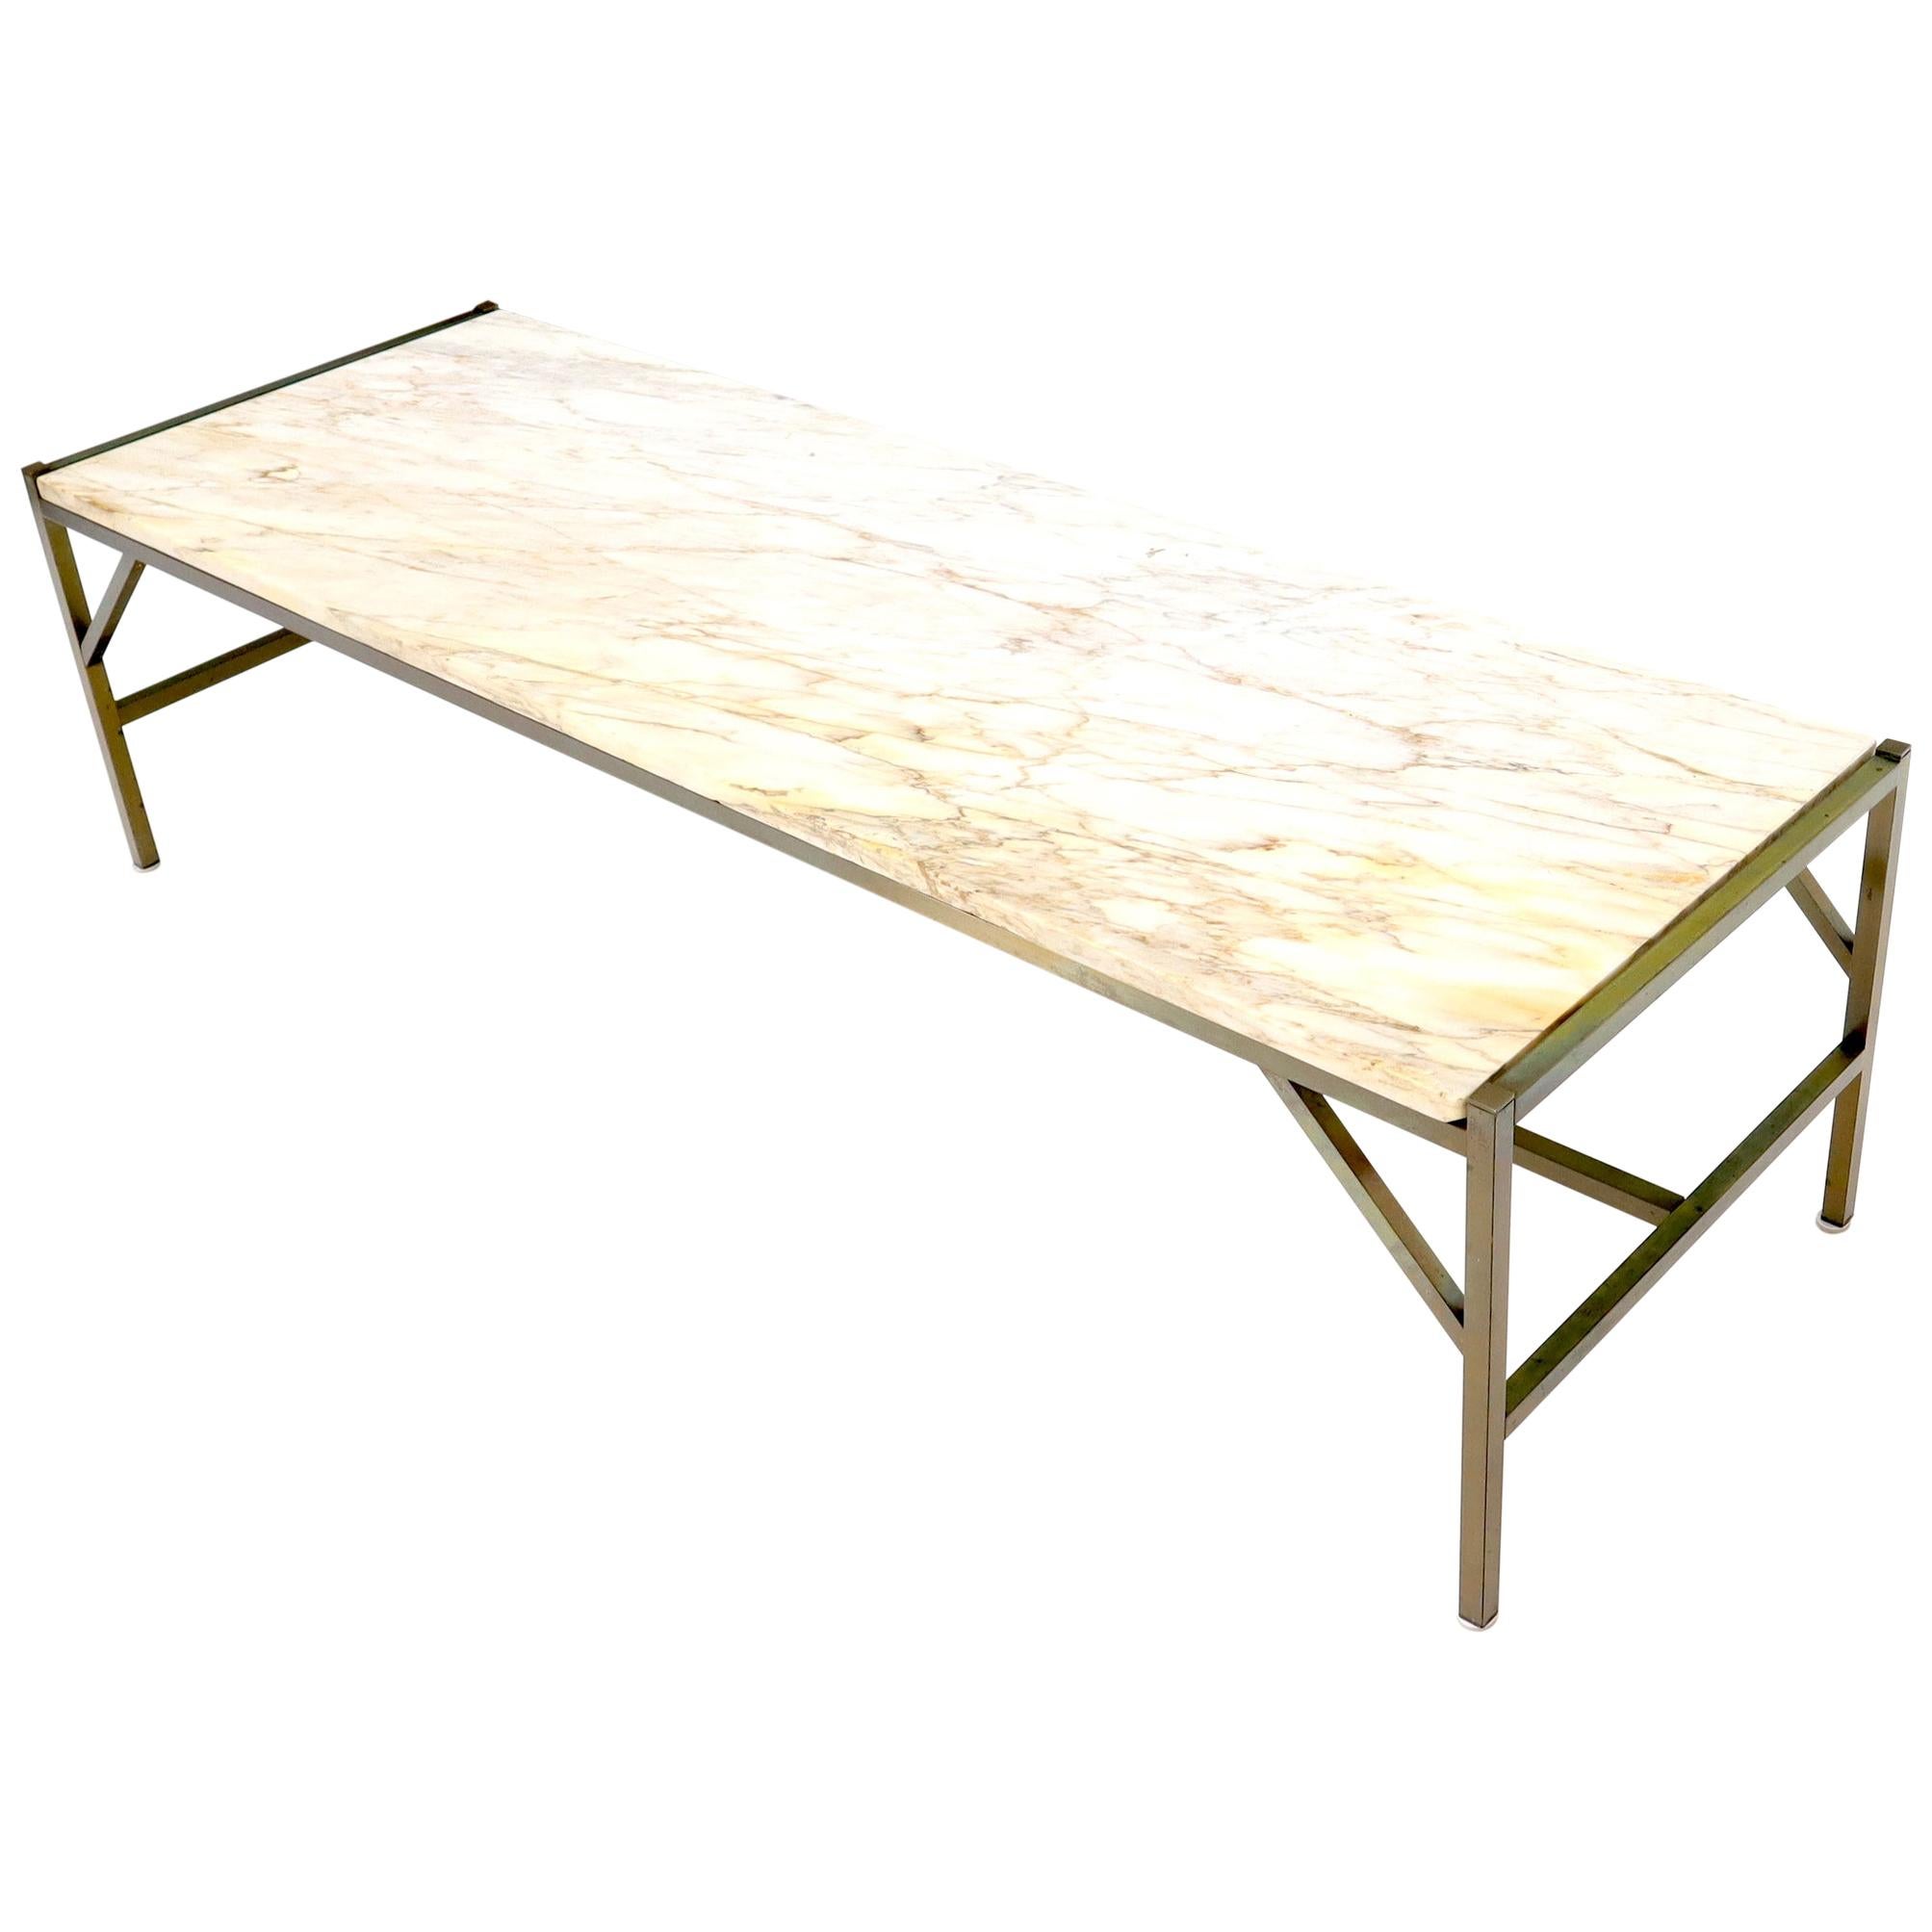 Table basse rectangulaire avec cadre en laiton et plateau en marbre, attribuée à McCobb